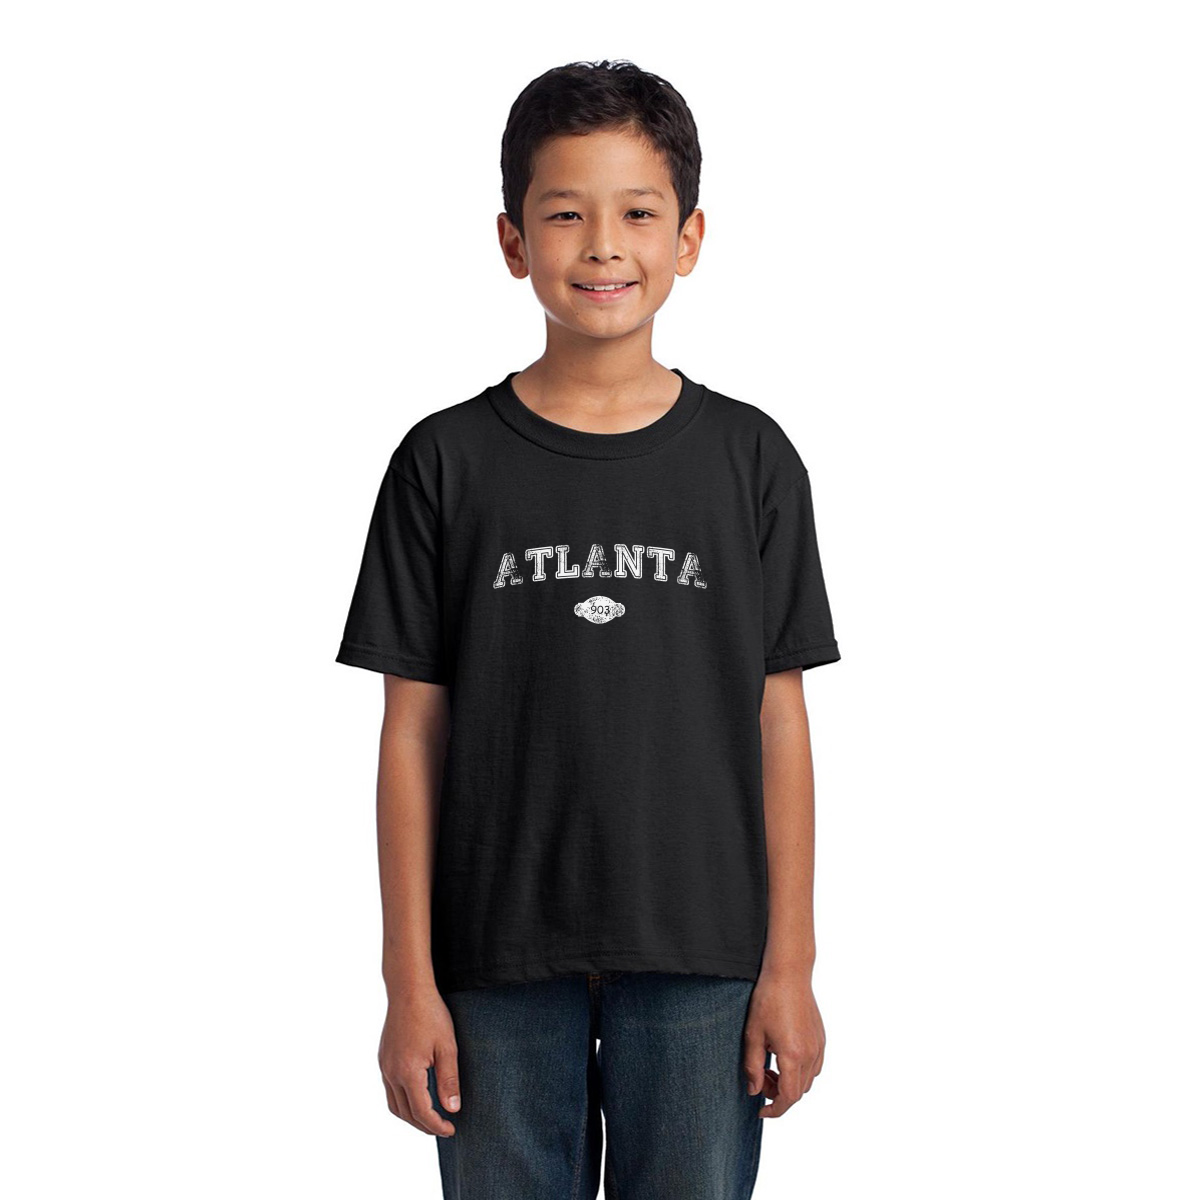 Atlanta 903 Represent Toddler T-shirt | Black